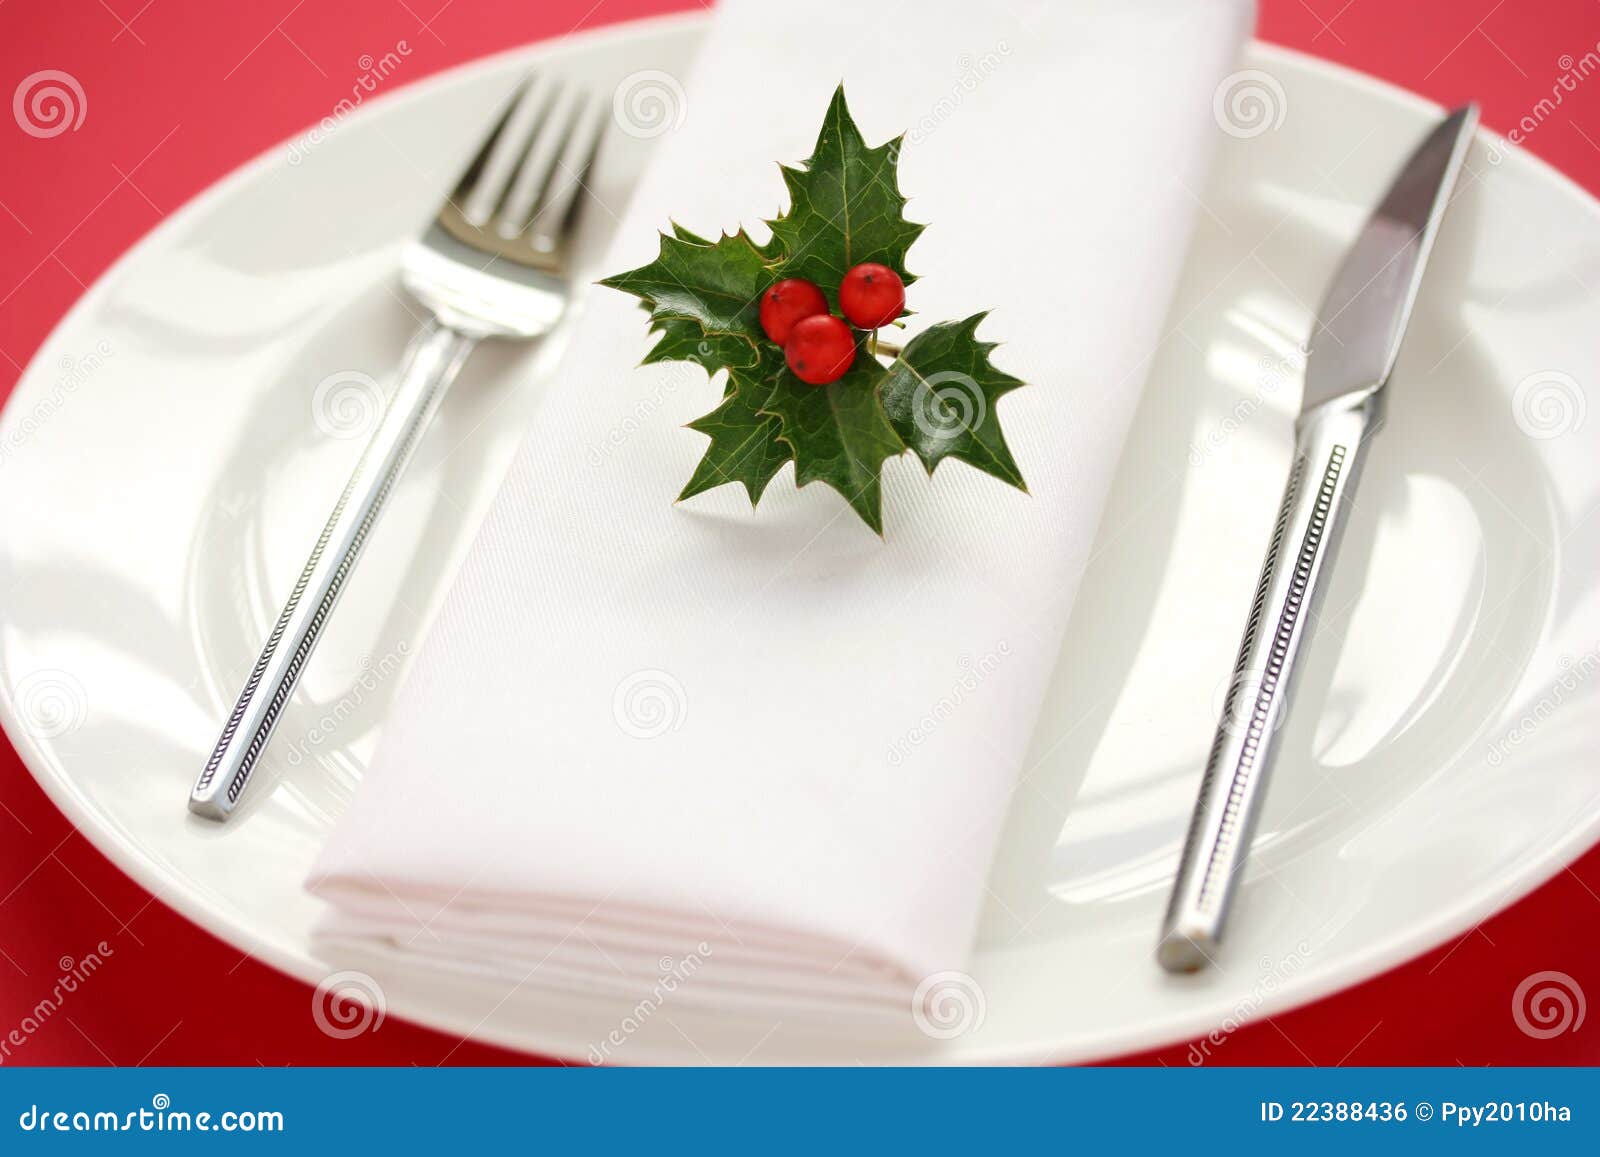 clipart christmas dinner table - photo #9